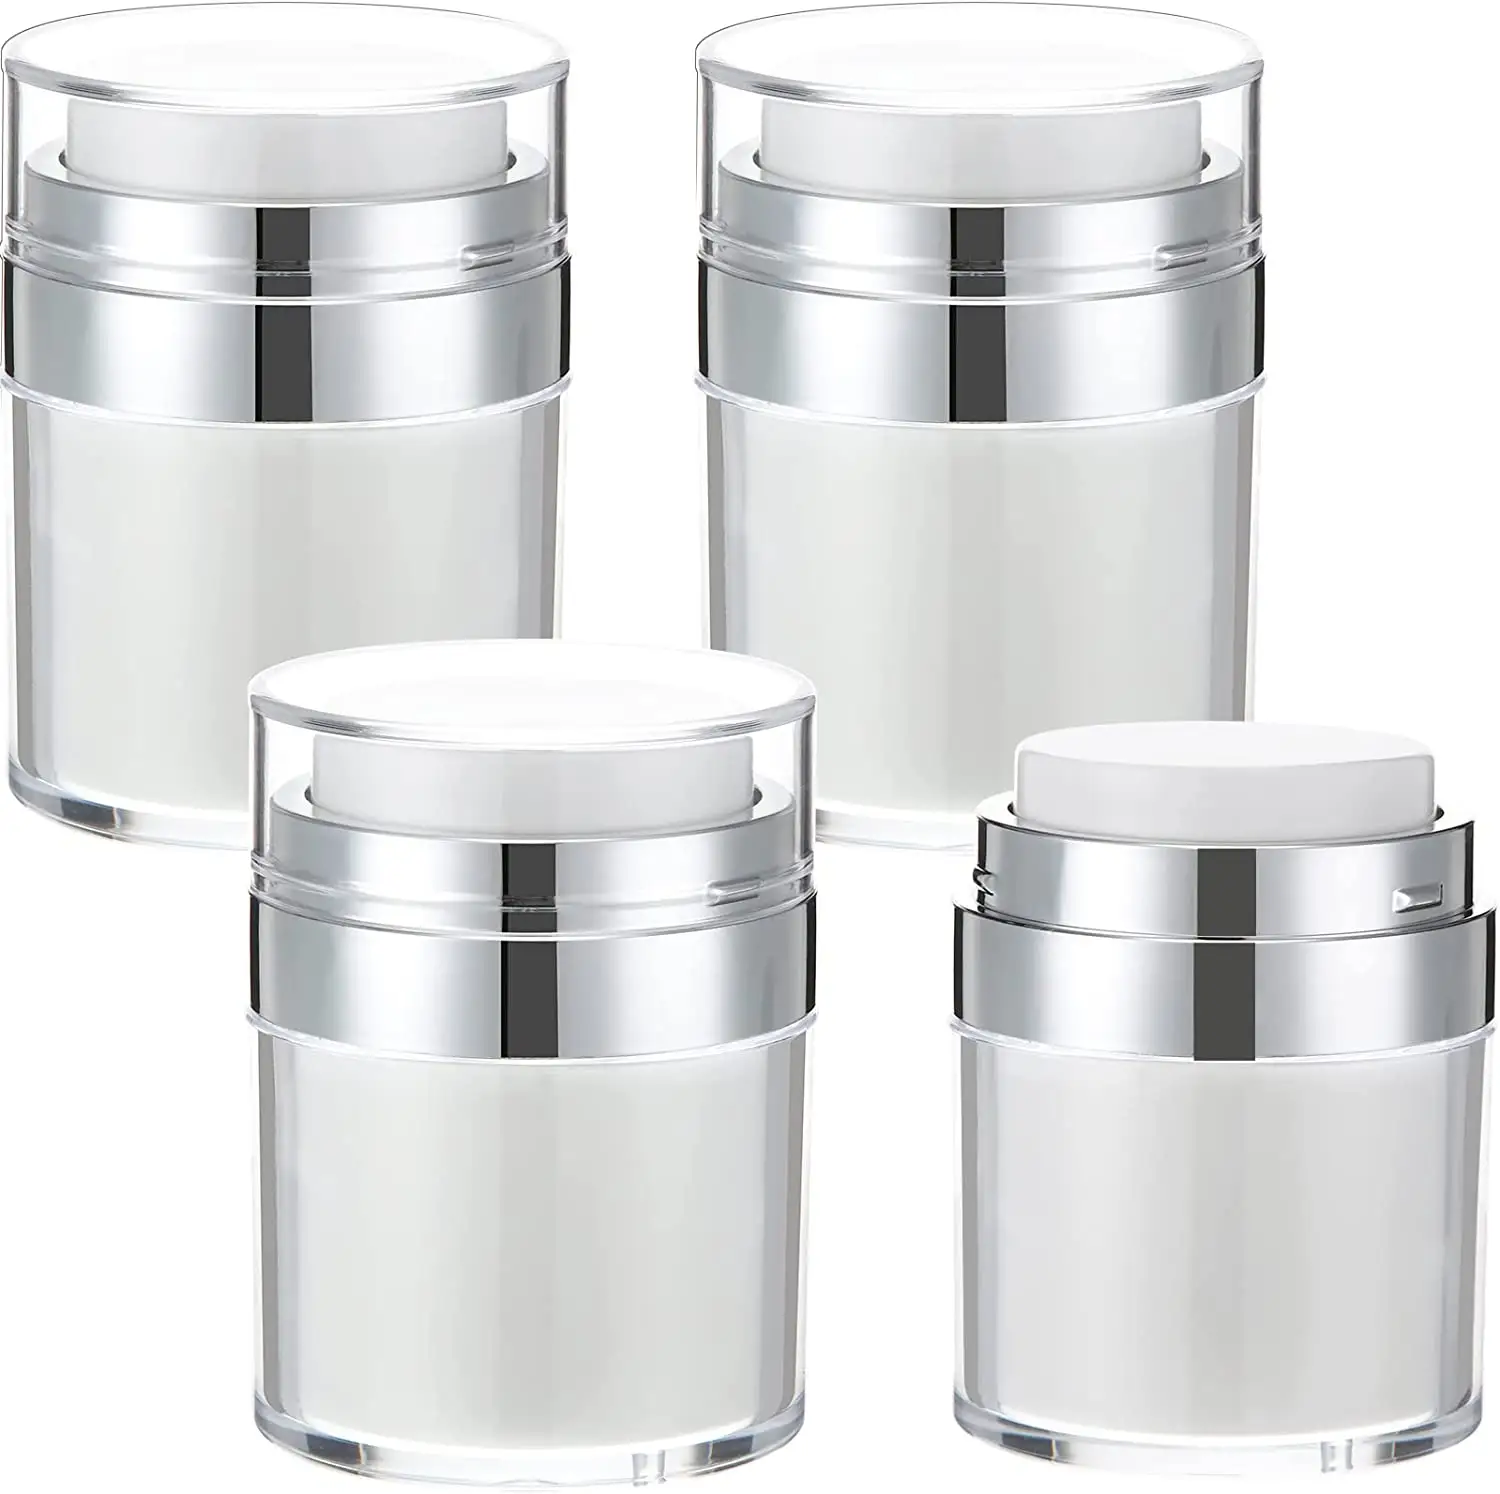 Goede Prijs Cosmetica Containers En Verpakking Huidverzorging Airless Duwen Lotion Cosmetische Crème Pot Airless Pomp Pot